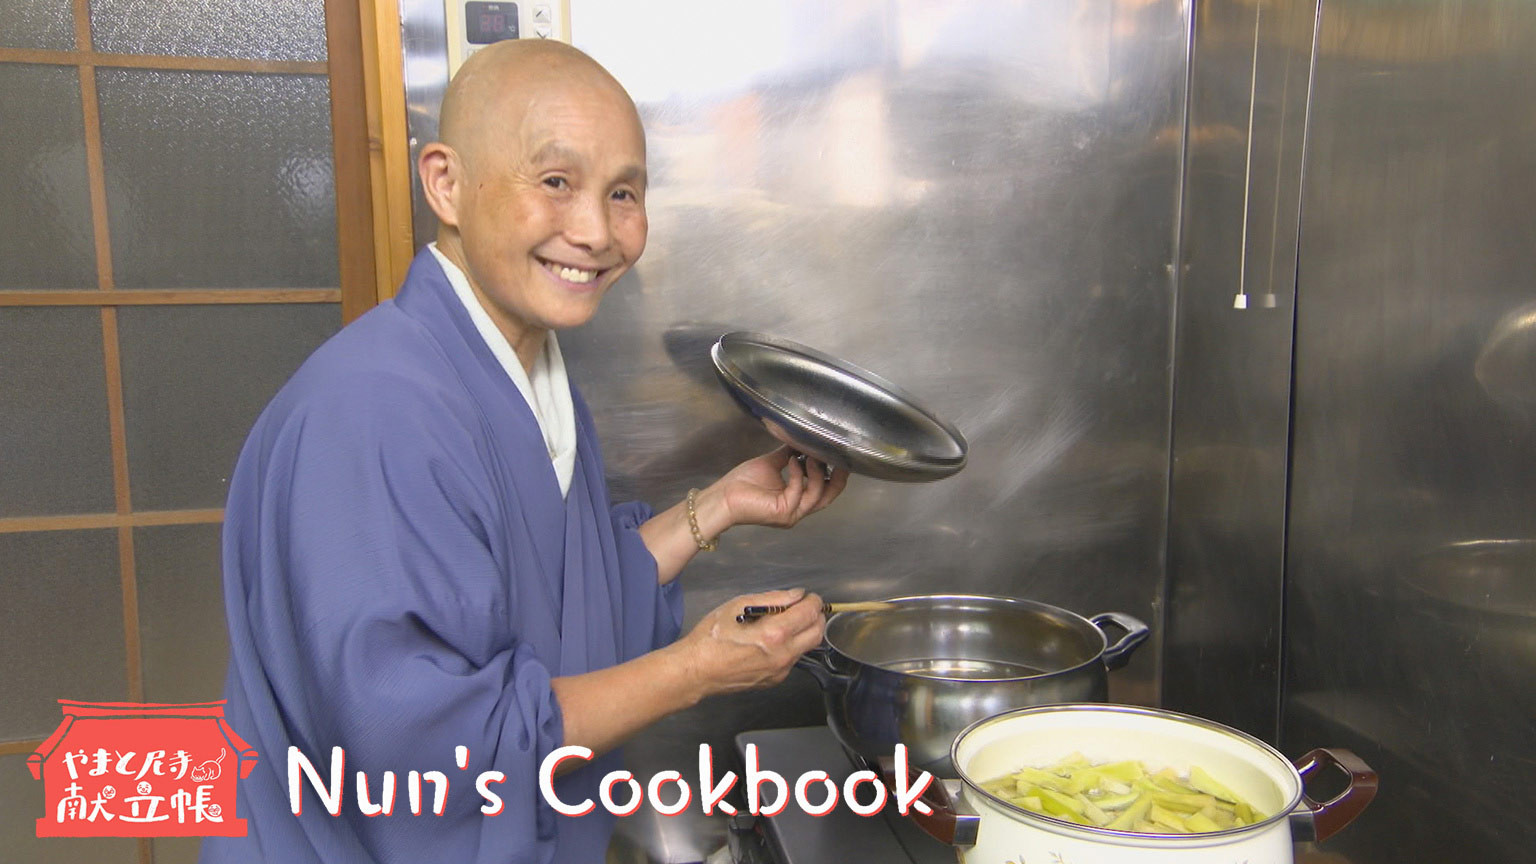 भिक्षुणियों की पाक-कला
Nun's Cookbook